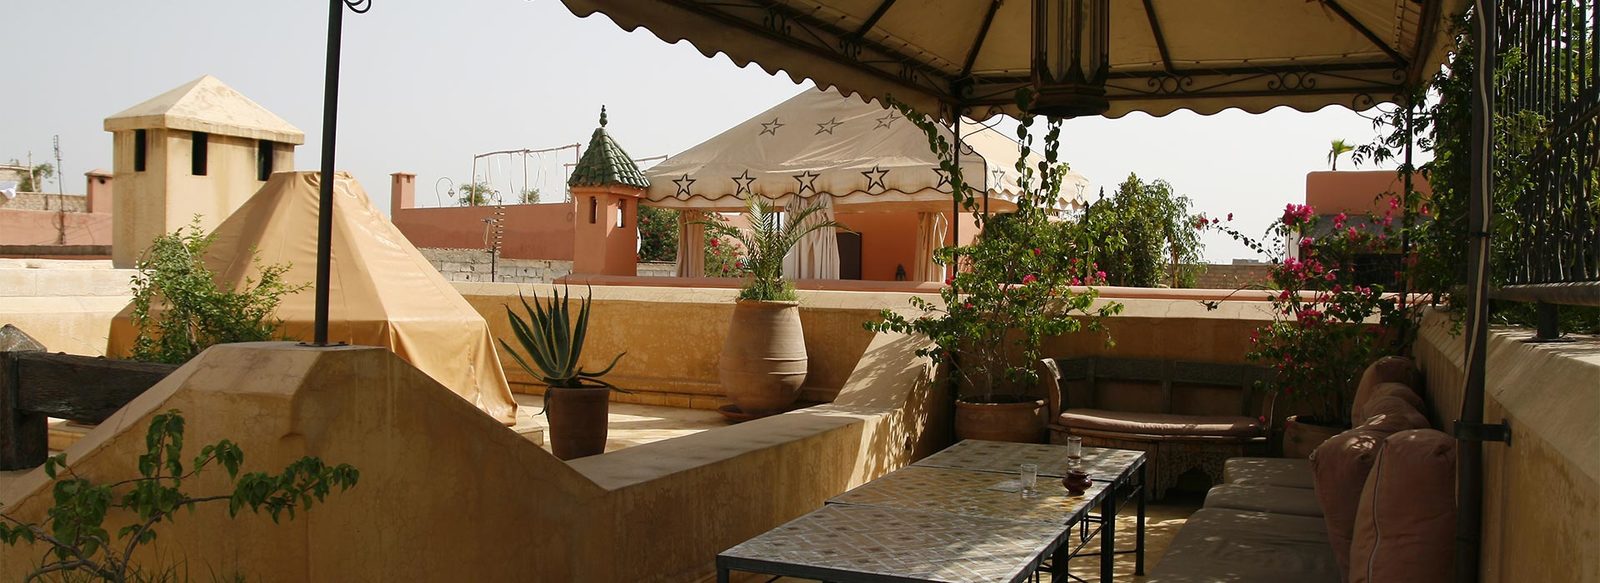 Marrakech in riad, con pranzo tipico, cena in palazzo storico e lezione di cucina